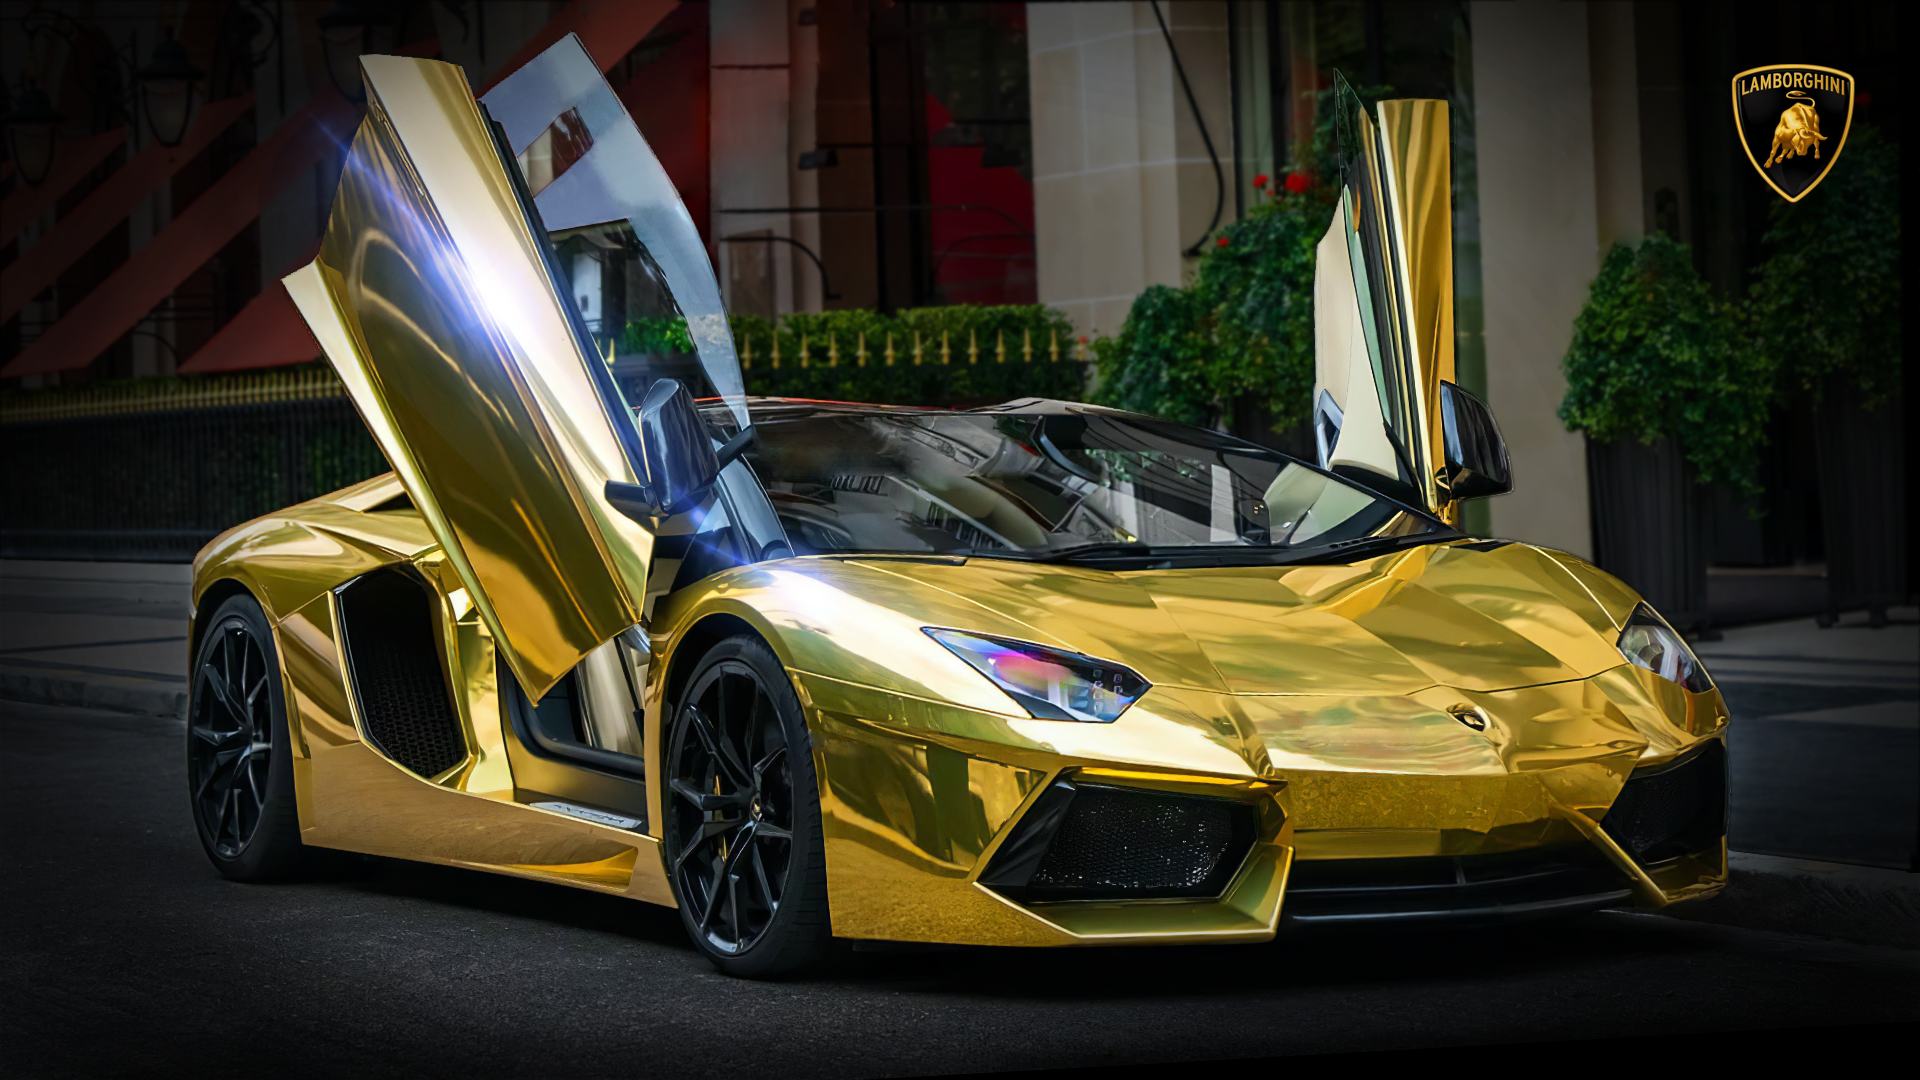 Picture of Gold Lamborghini Wallpaper